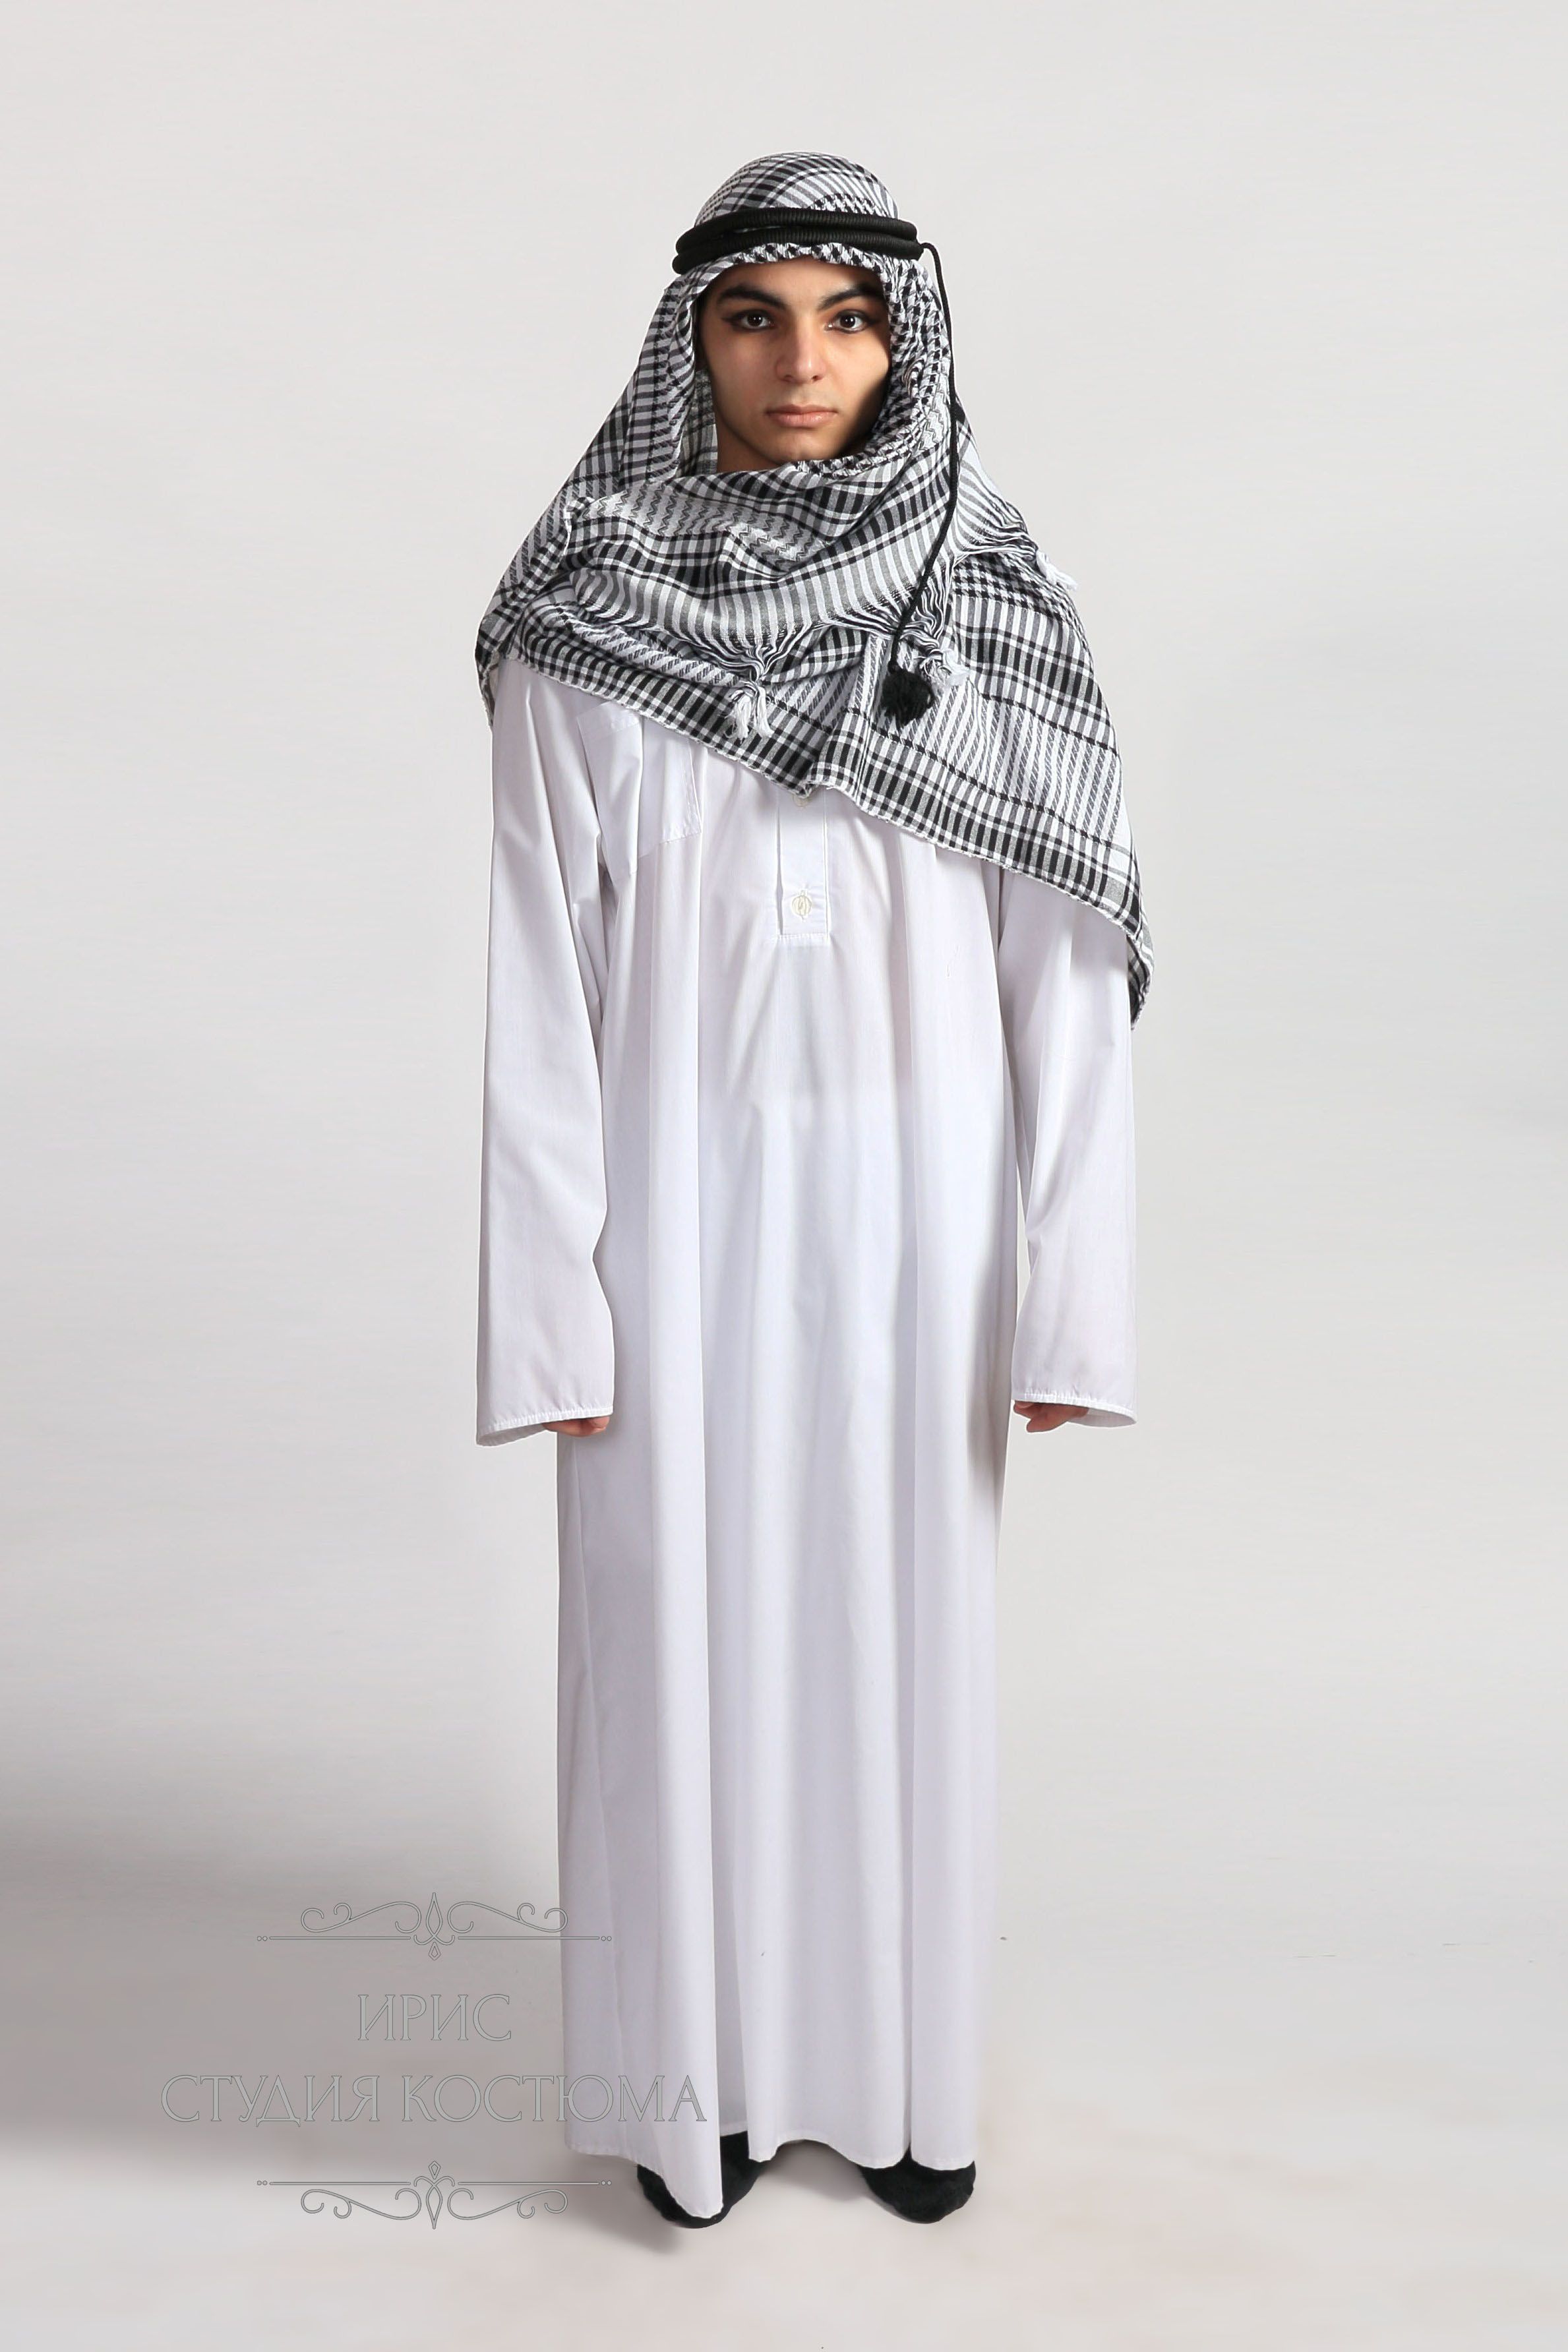 Арабский национальный мужской костюм